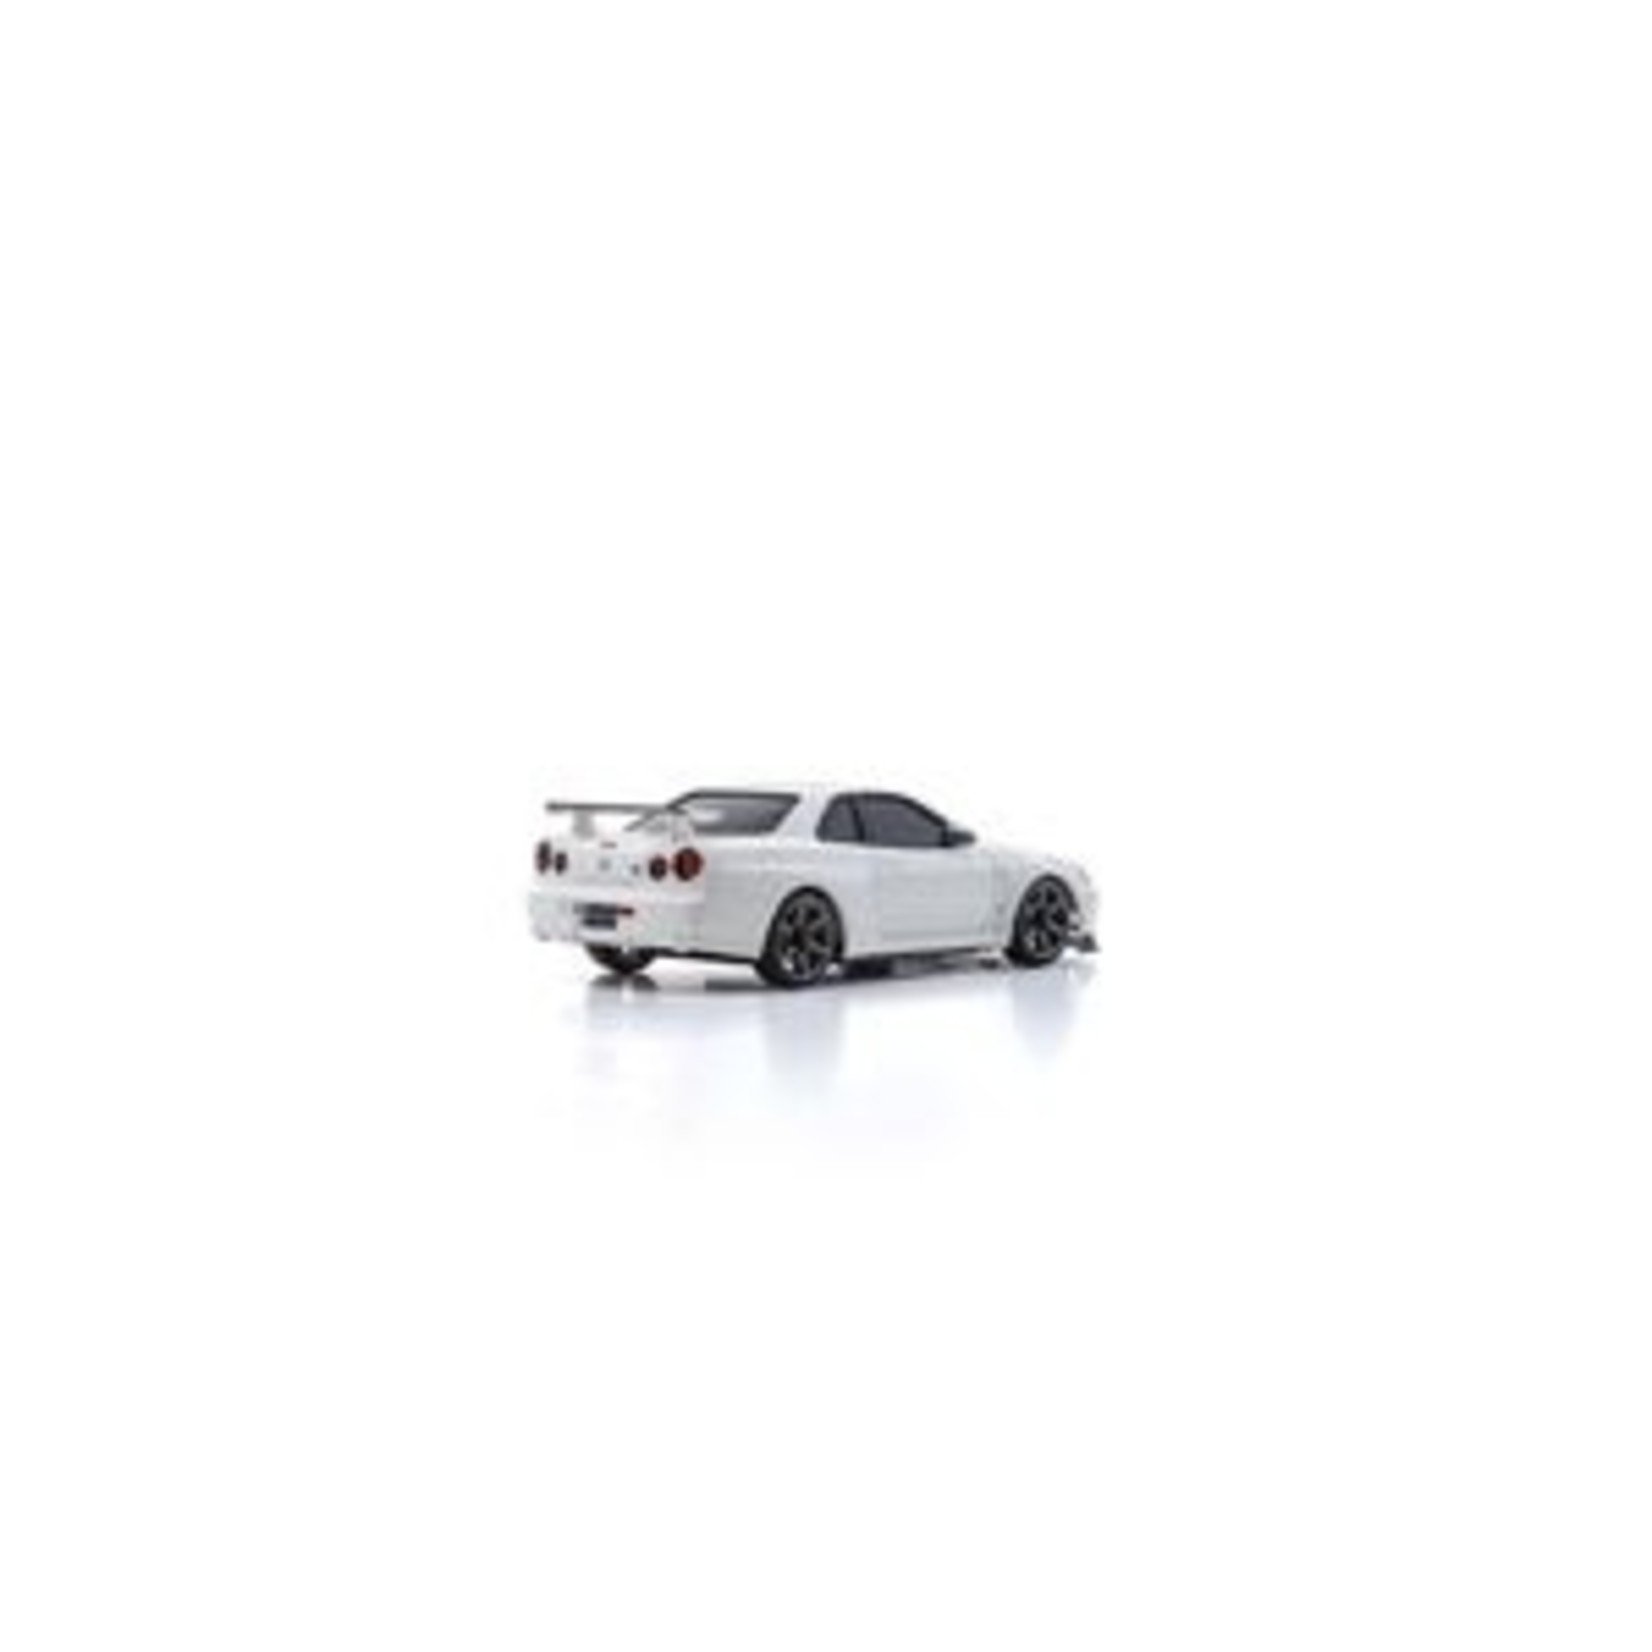 Kyosho KYO32629W  MINI-Z AWD MA-020 Series Readyset Nissan Skyline GT-R V.spec II Nur (R34) White